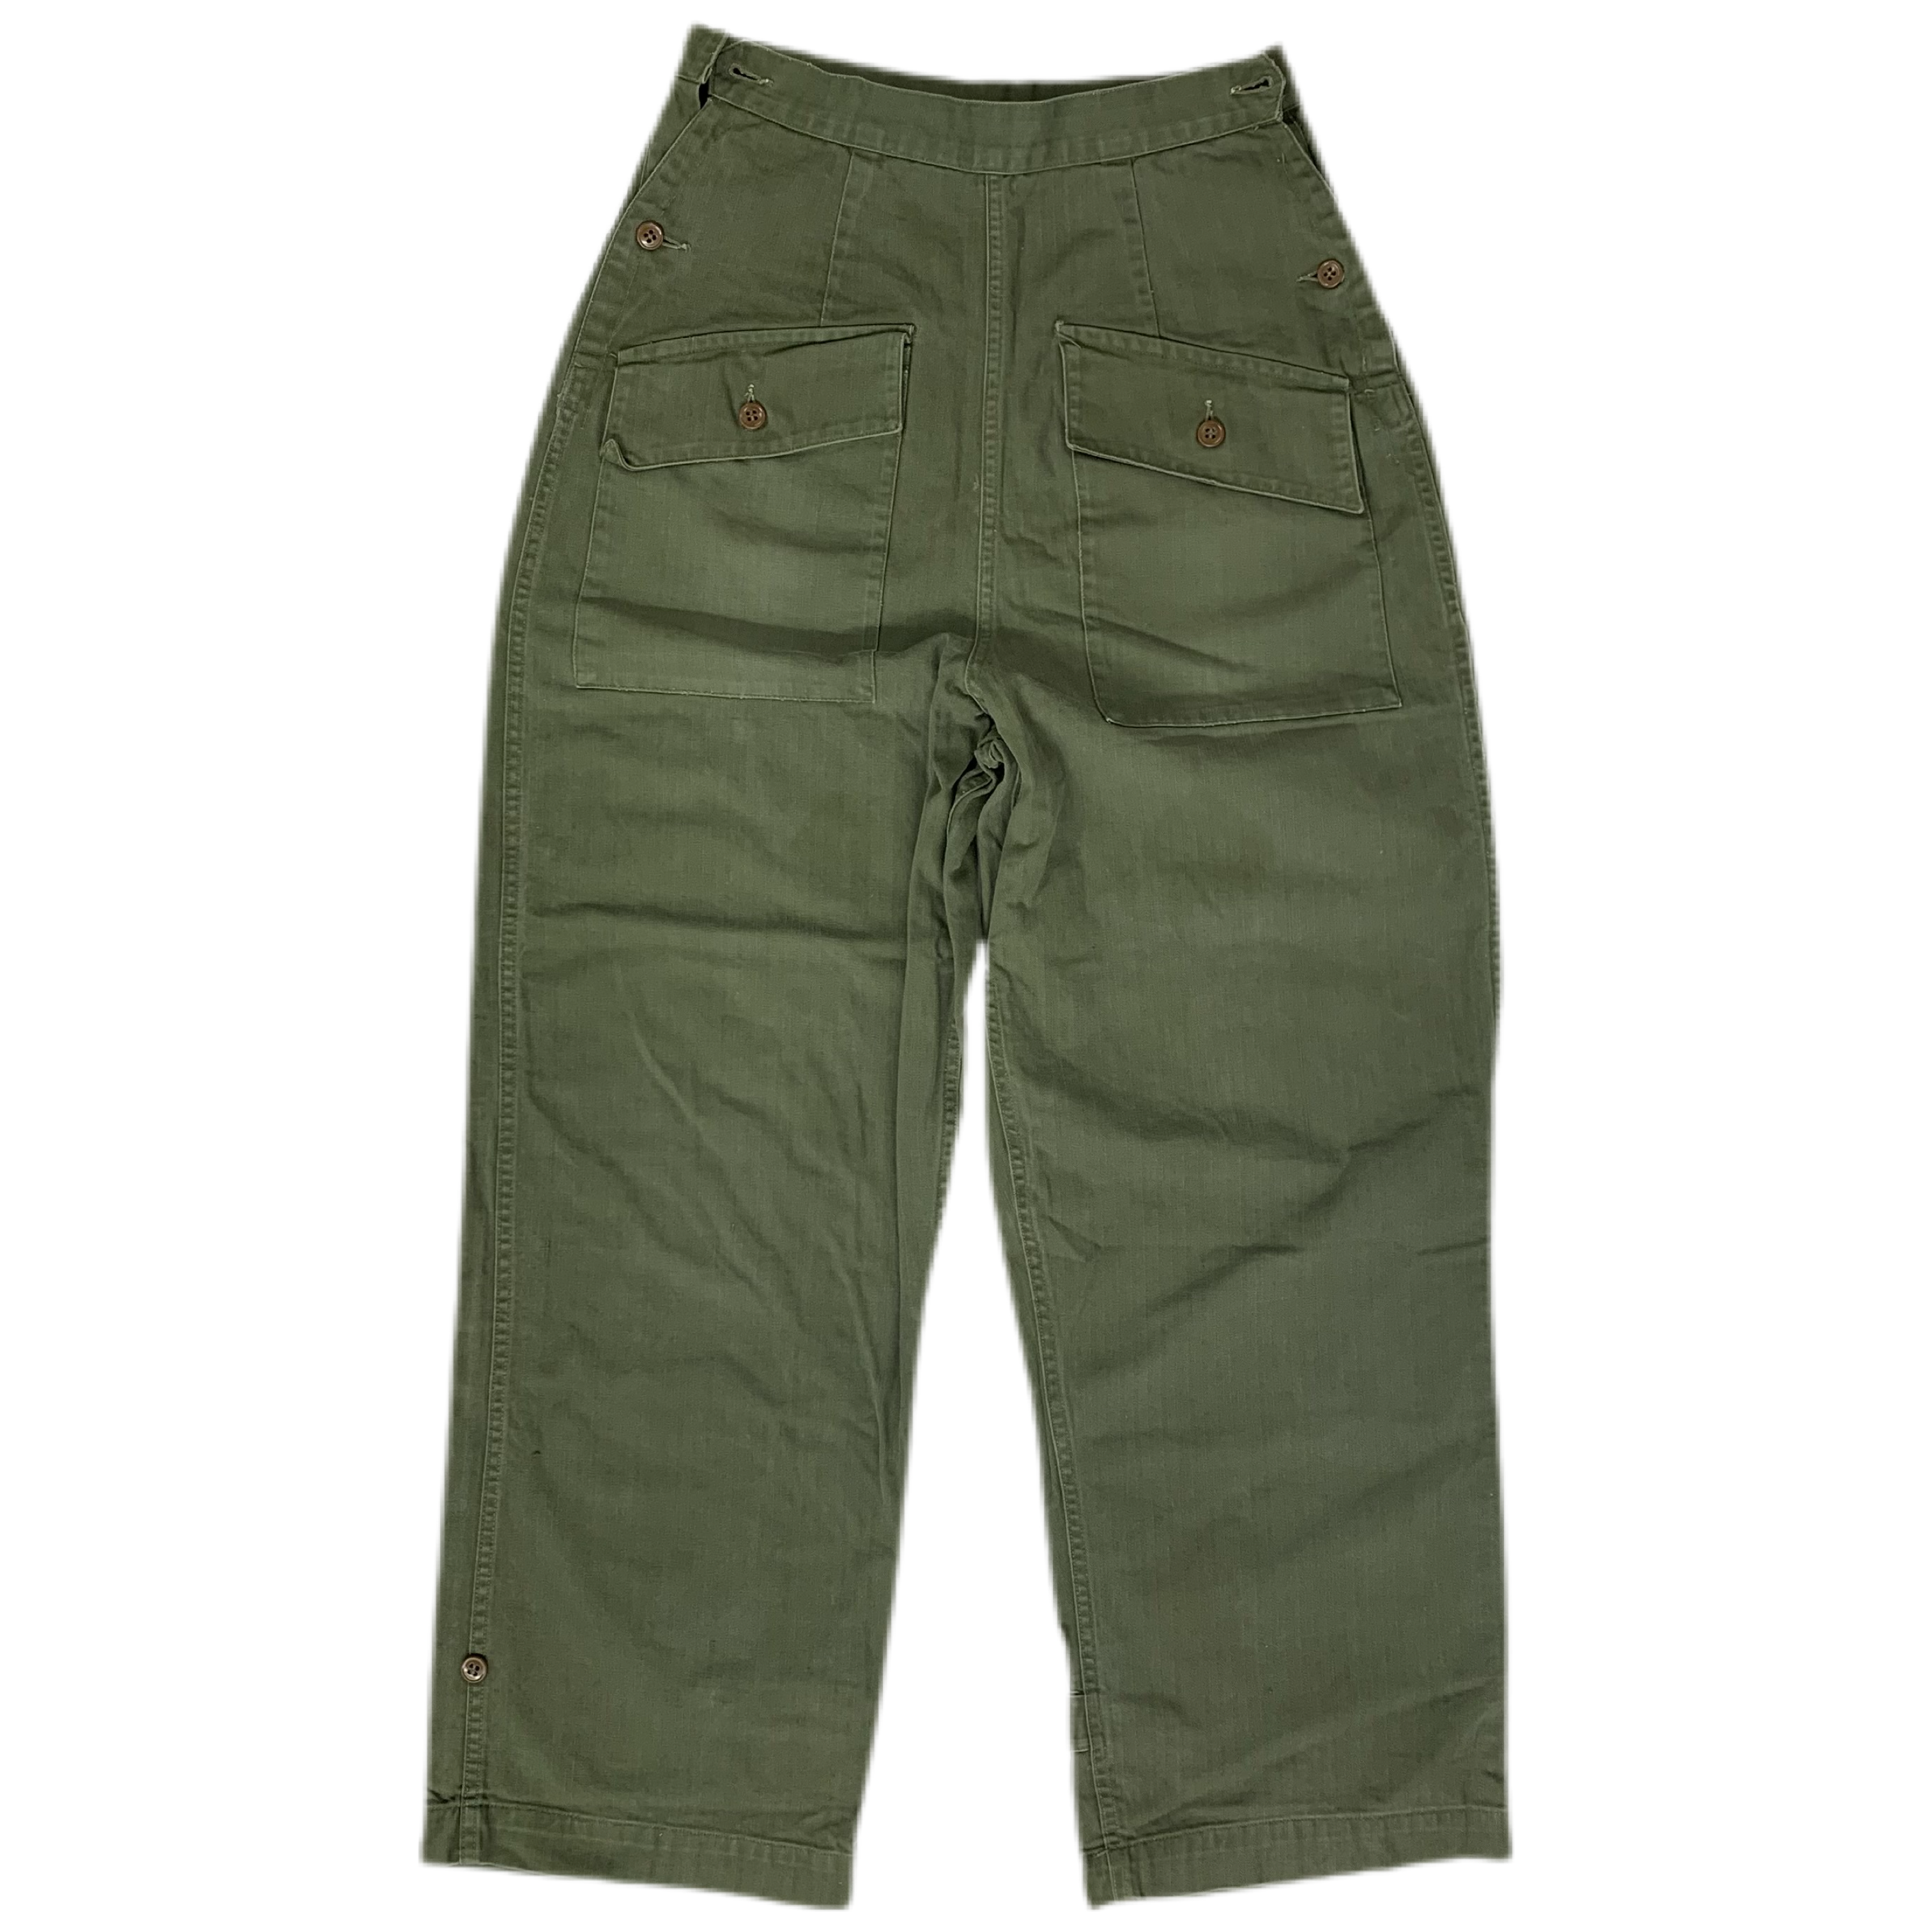 Vietnam War OG-107 Utility Fatigue Pants, Baker Trousers